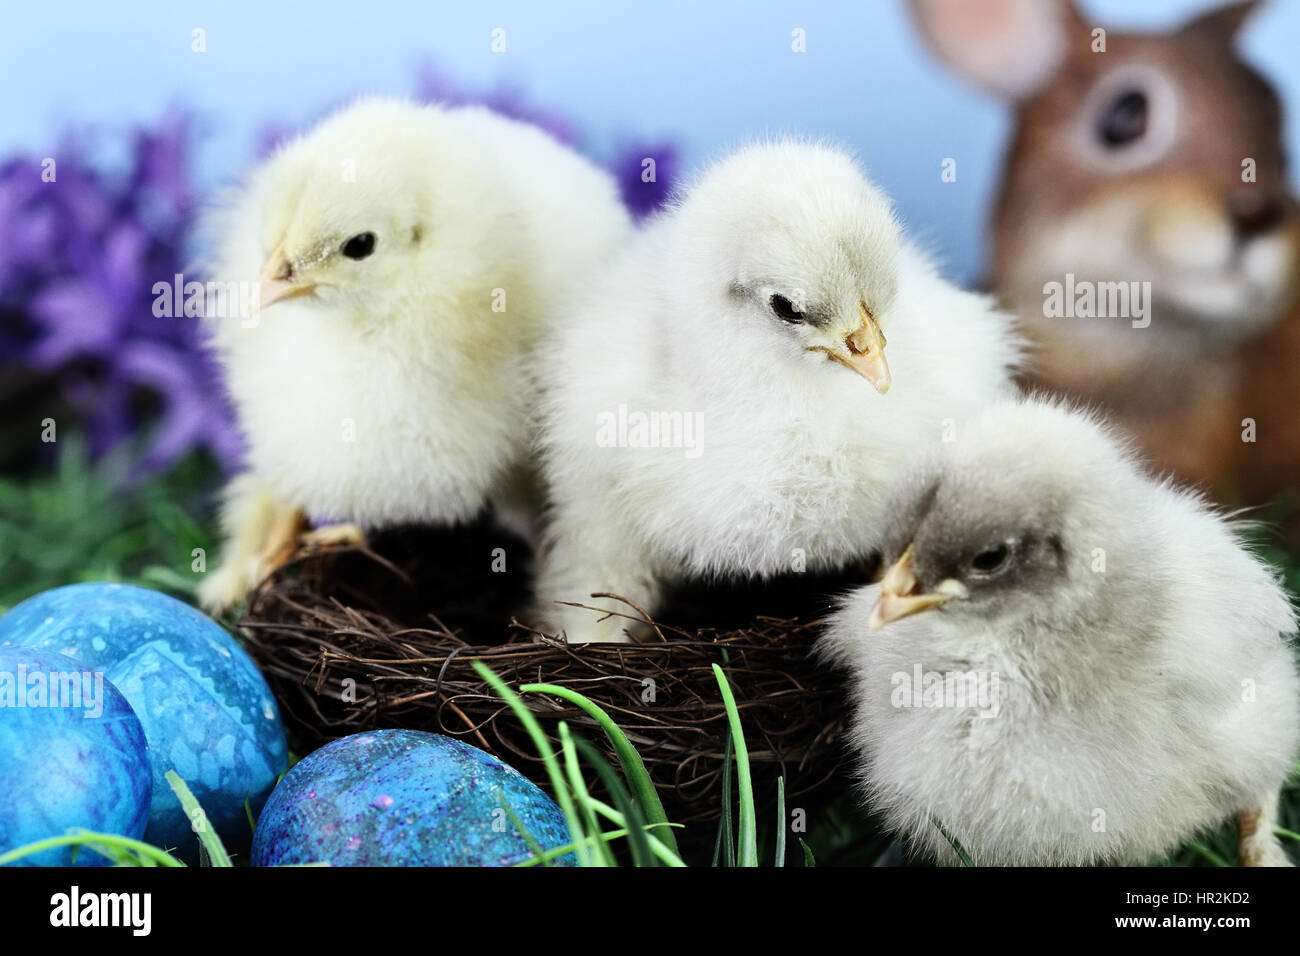 Drei süße kleine Küken sitzen in einem Nest, umgeben von Ostereiern. Extrem geringe Schärfentiefe mit selektiven Fokus auf Mittelfläche Küken. Stockfoto